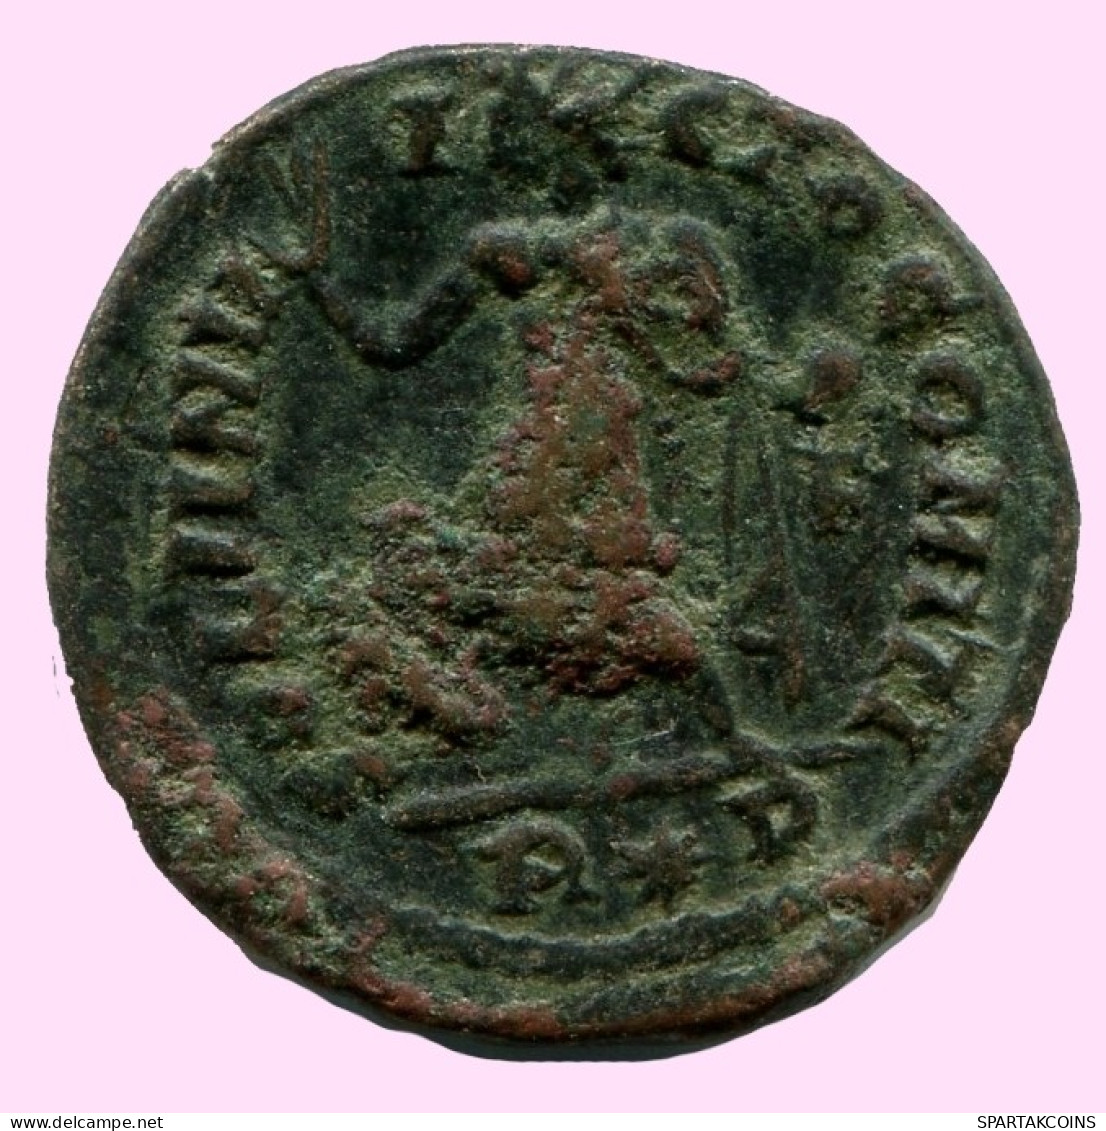 CONSTANTINE I Authentische Antike RÖMISCHEN KAISERZEIT Münze #ANC12242.12.D.A - The Christian Empire (307 AD To 363 AD)